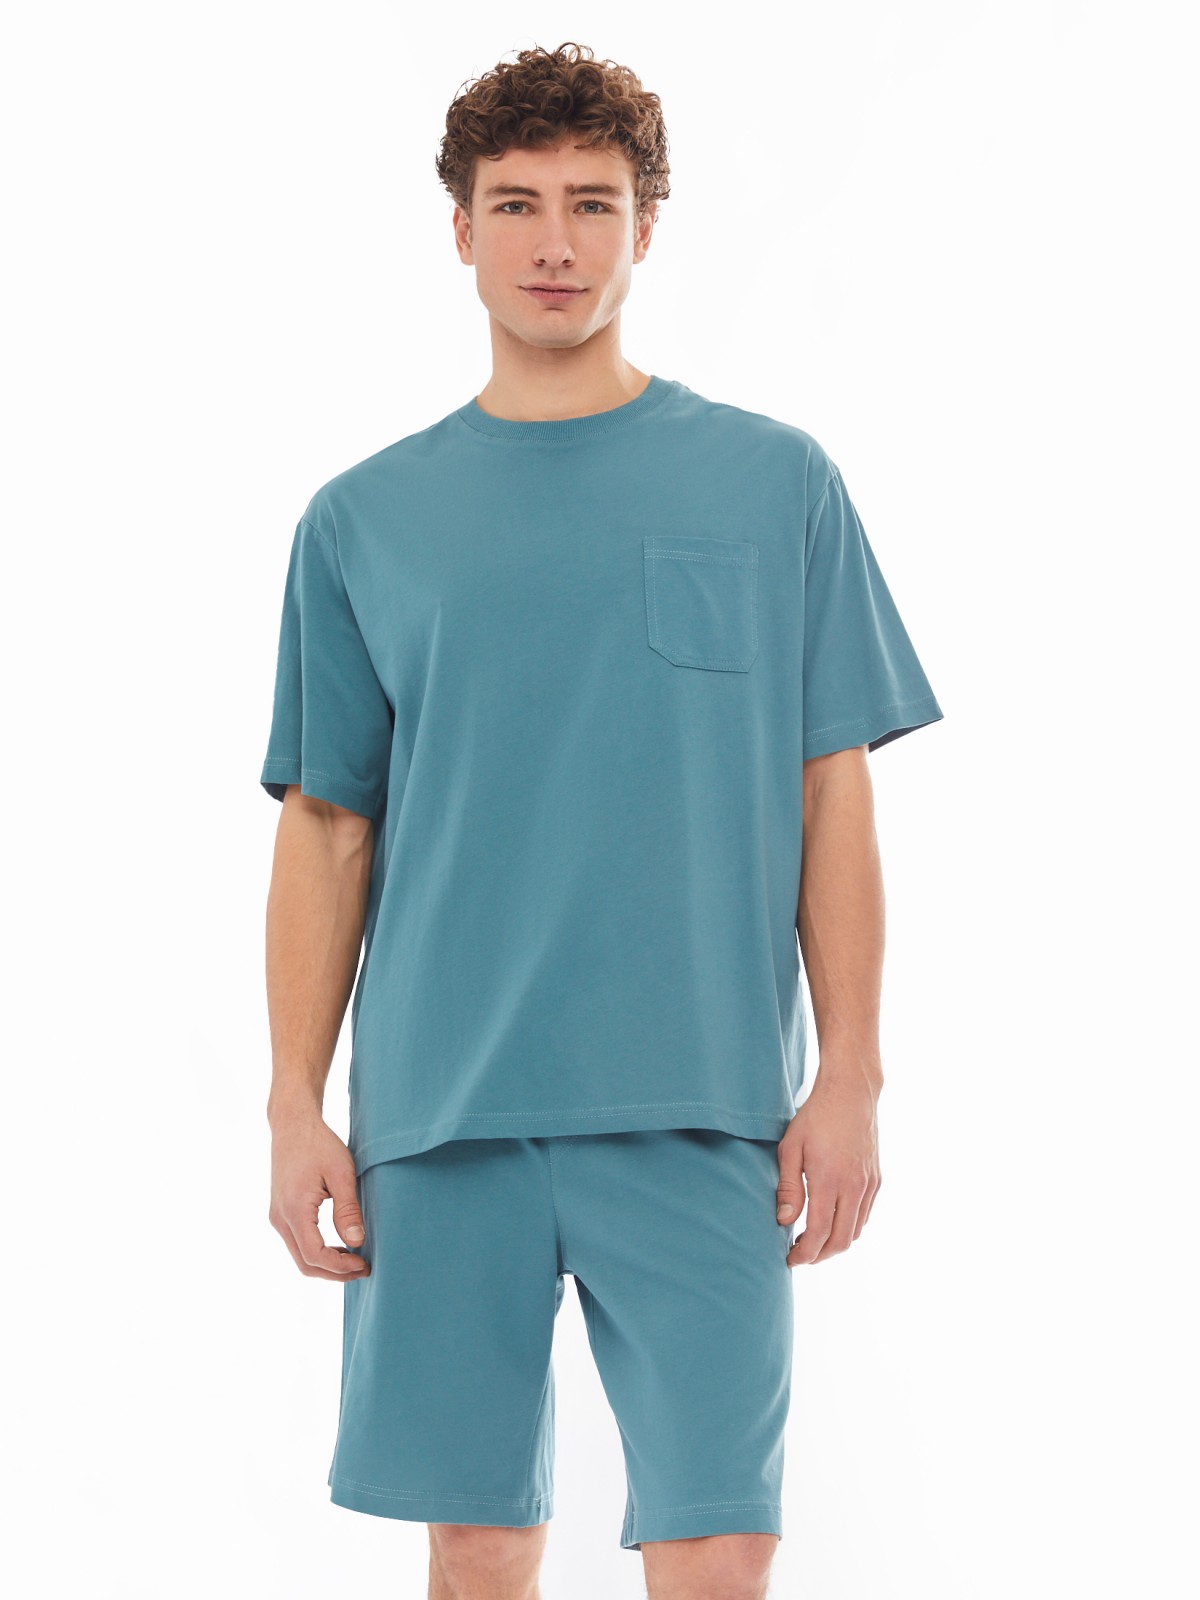 Домашний комплект из хлопка (футболка, шорты) zolla 61413870W041, цвет темно-бирюзовый, размер S - фото 1